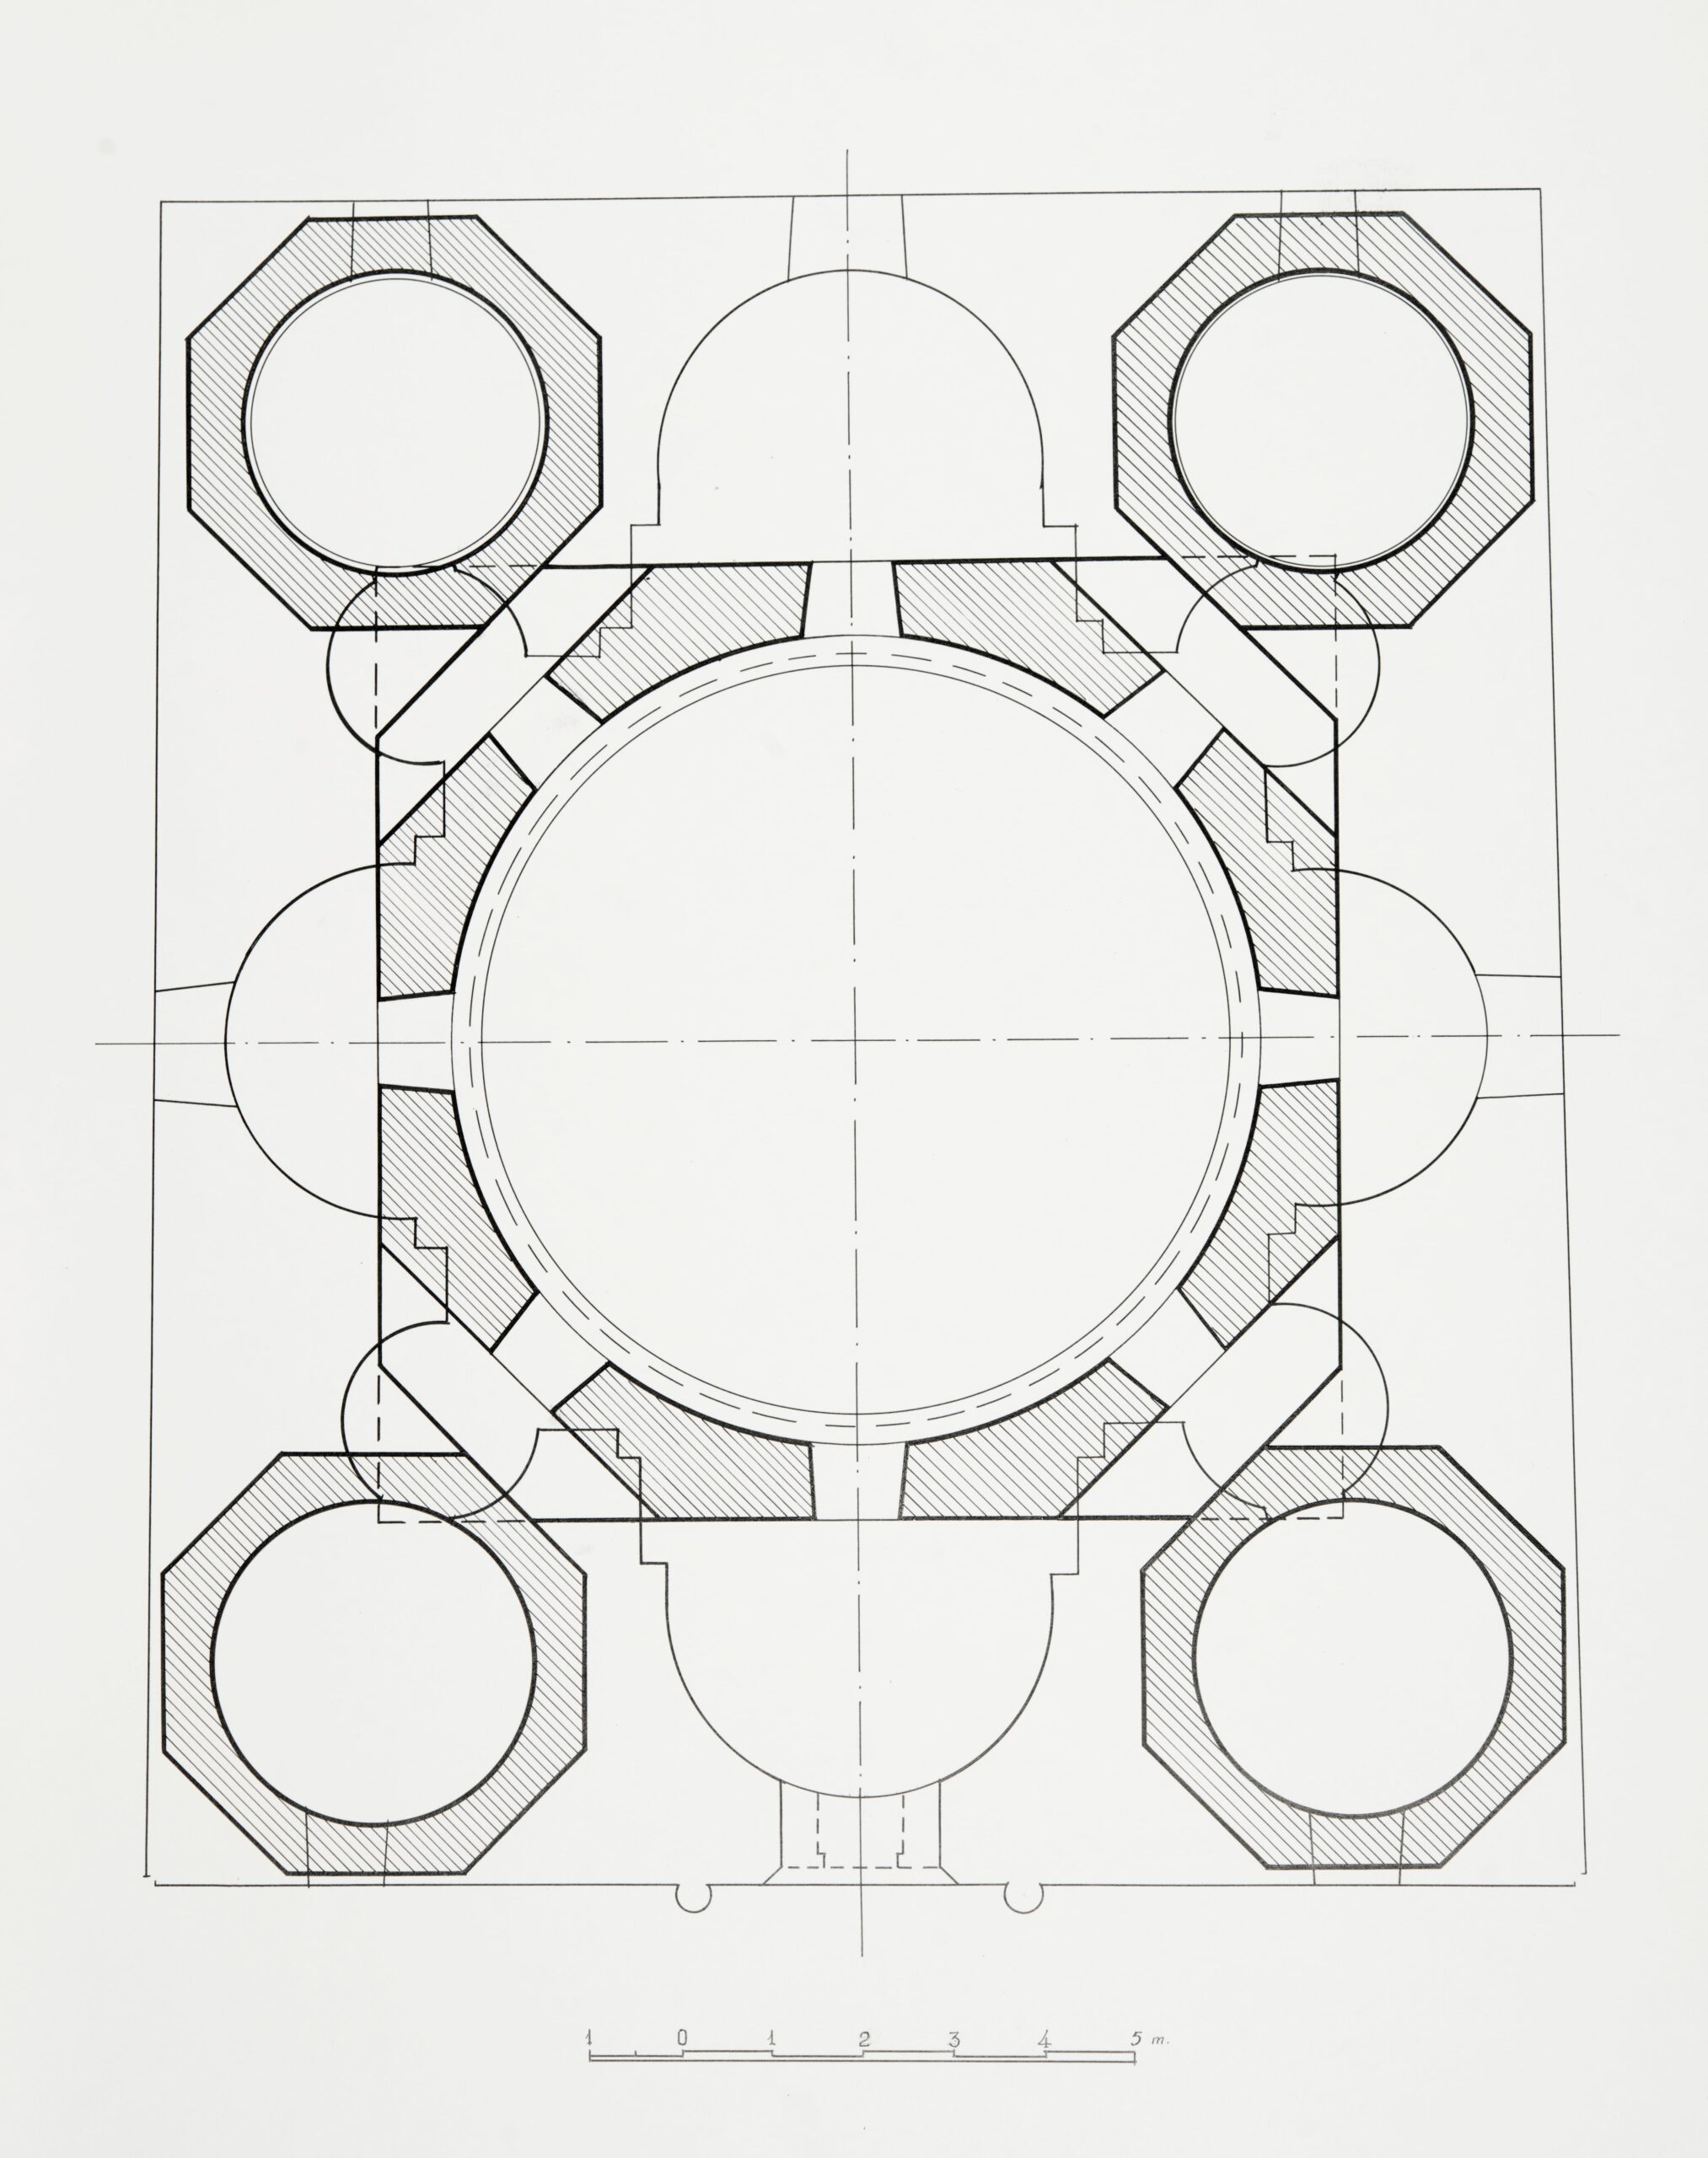 Հատակագիծ գմբեթների նիշով (այս գծագրում կենտրոնական գմբեթը պատկերված է ամեն նիստին մեկական պատուհանով)